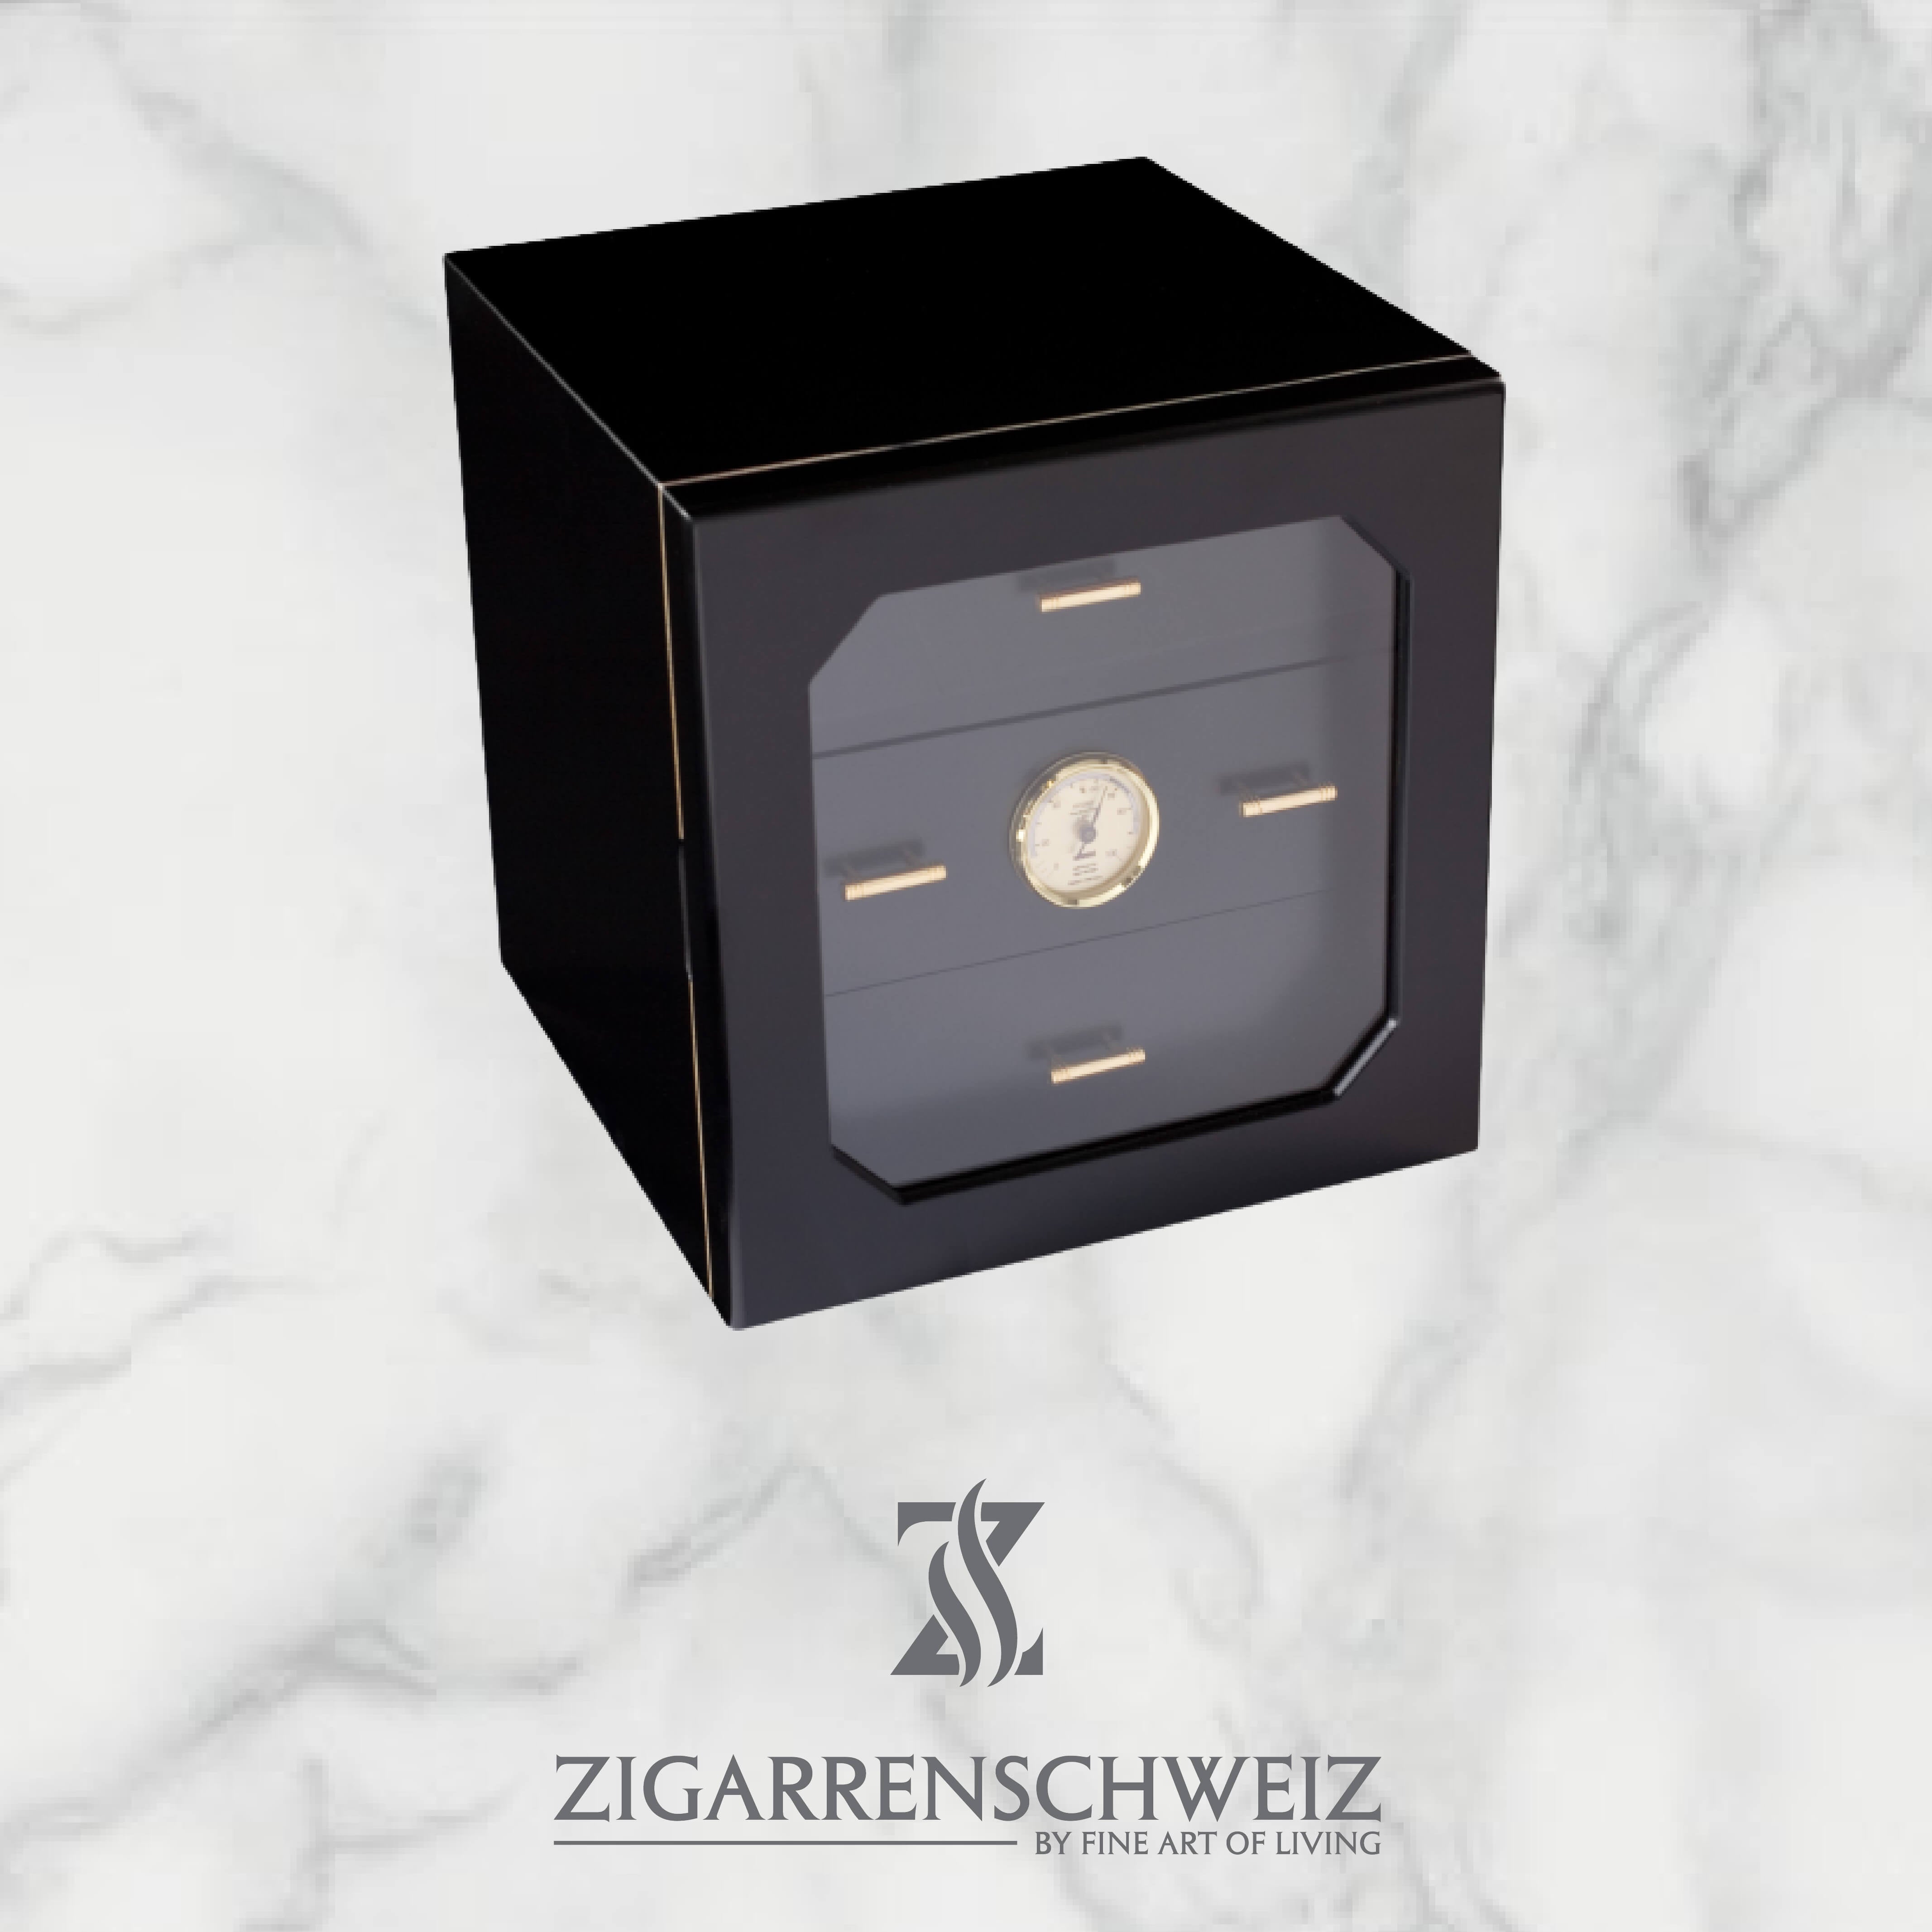 Adorini Chianti medium Deluxe Humidor für die Lagerung von bis zu 120 Robusto Zigarren, mit geschlossener Glastüre, Farbe: Schwarz